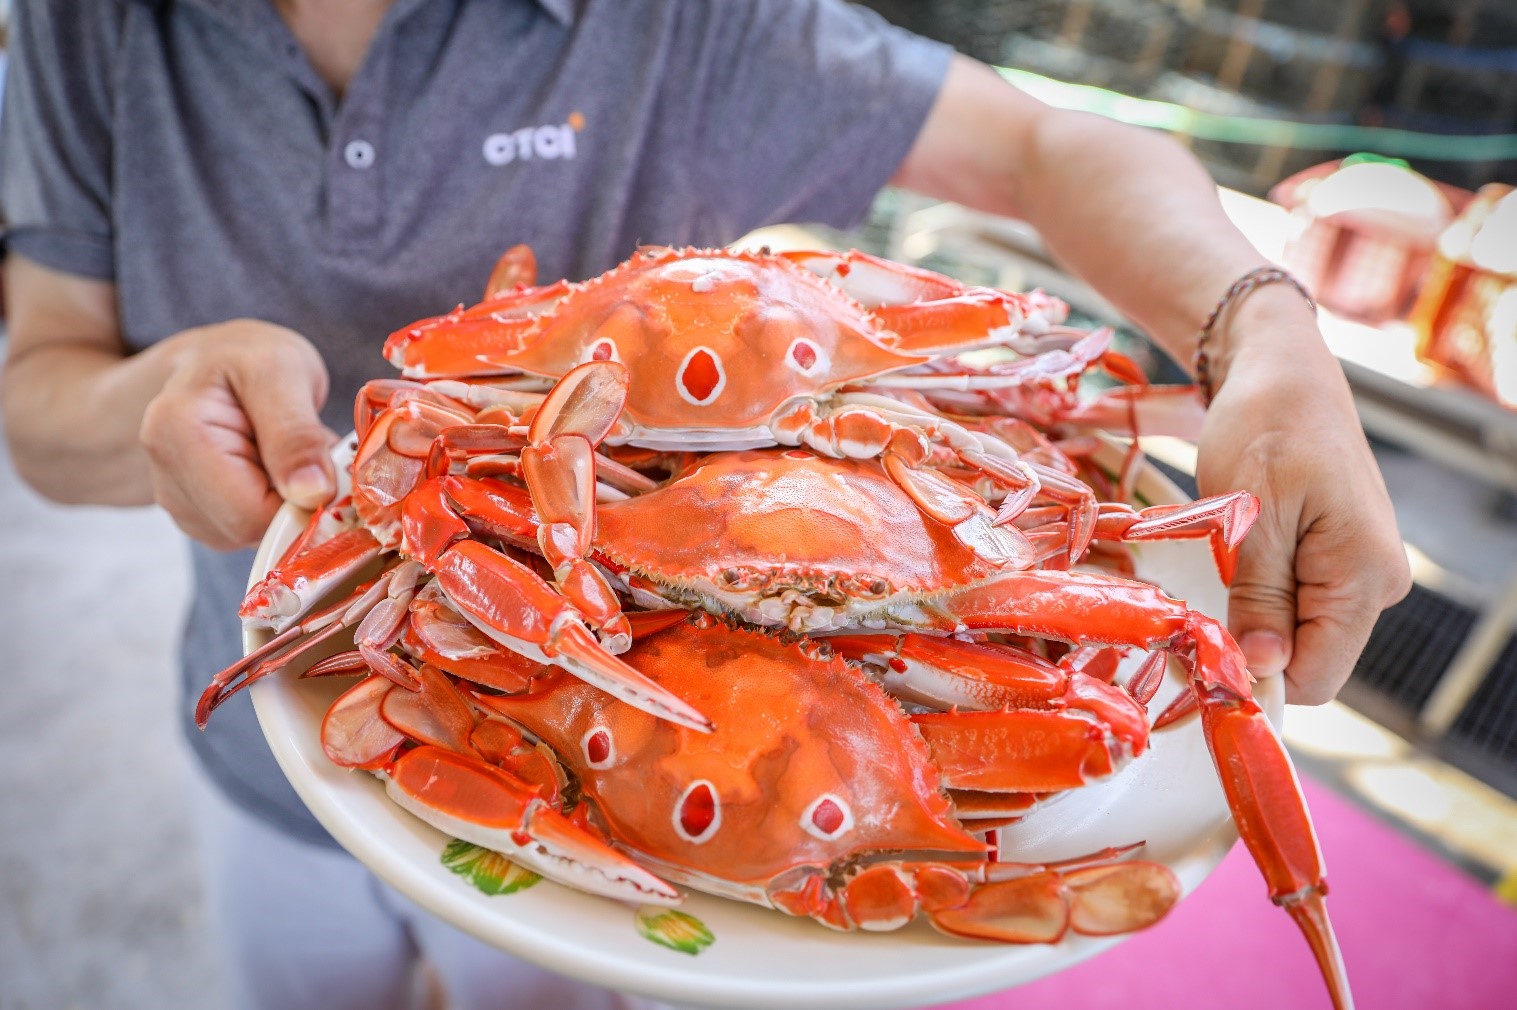 三點蟹產量為三種蟹中最大，價格親民受到饕客喜愛，圖中為民眾手持餐盤盛裝蒸熟後三點蟹。